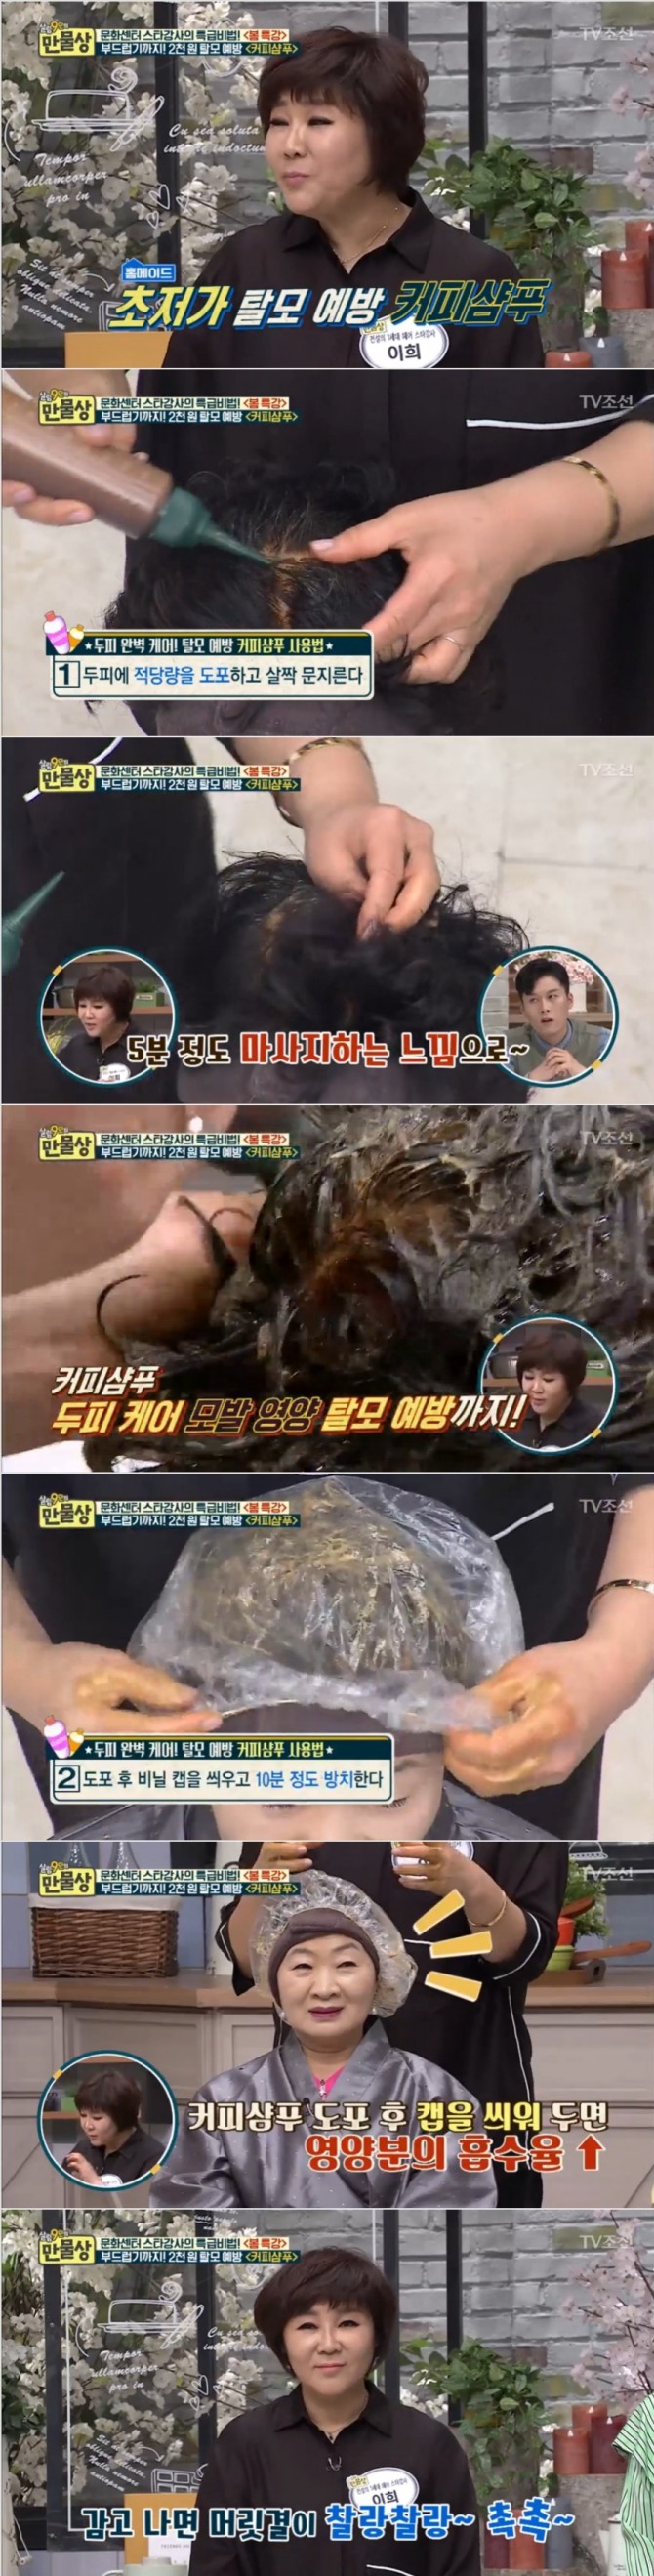 19일 방송된 TV조선 '살림9단의 만물상'에서는 이희 헤어디자이너가 출연, 탈모를 예방하는 '커피샴푸' 사용법을 공개했다. 사진=TV조선 방송 캡처